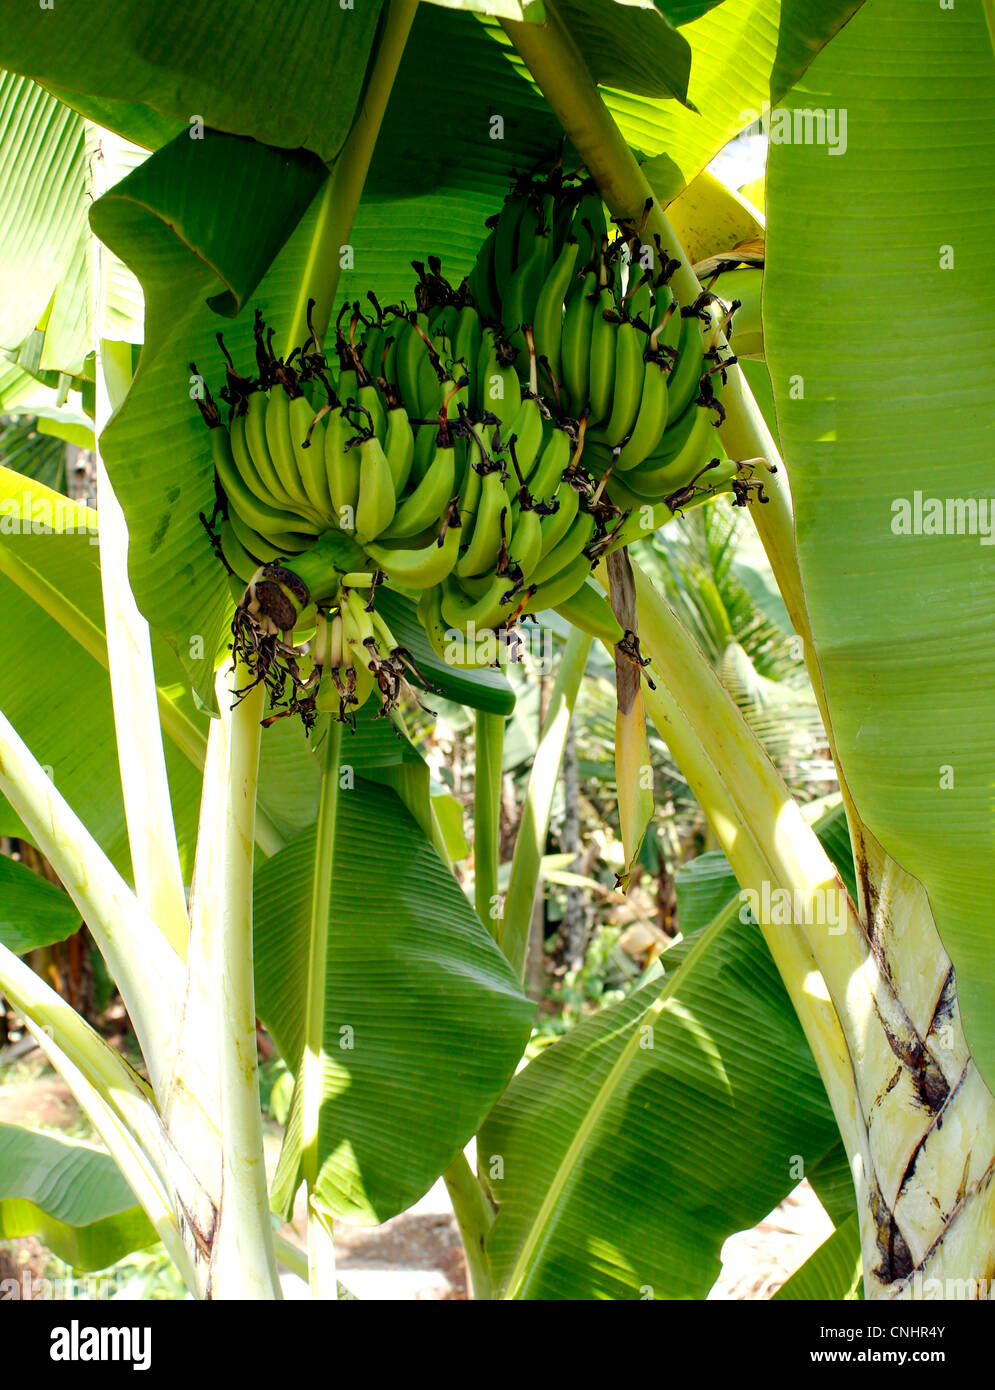 A banana tree bearign banana fruit Stock Photo